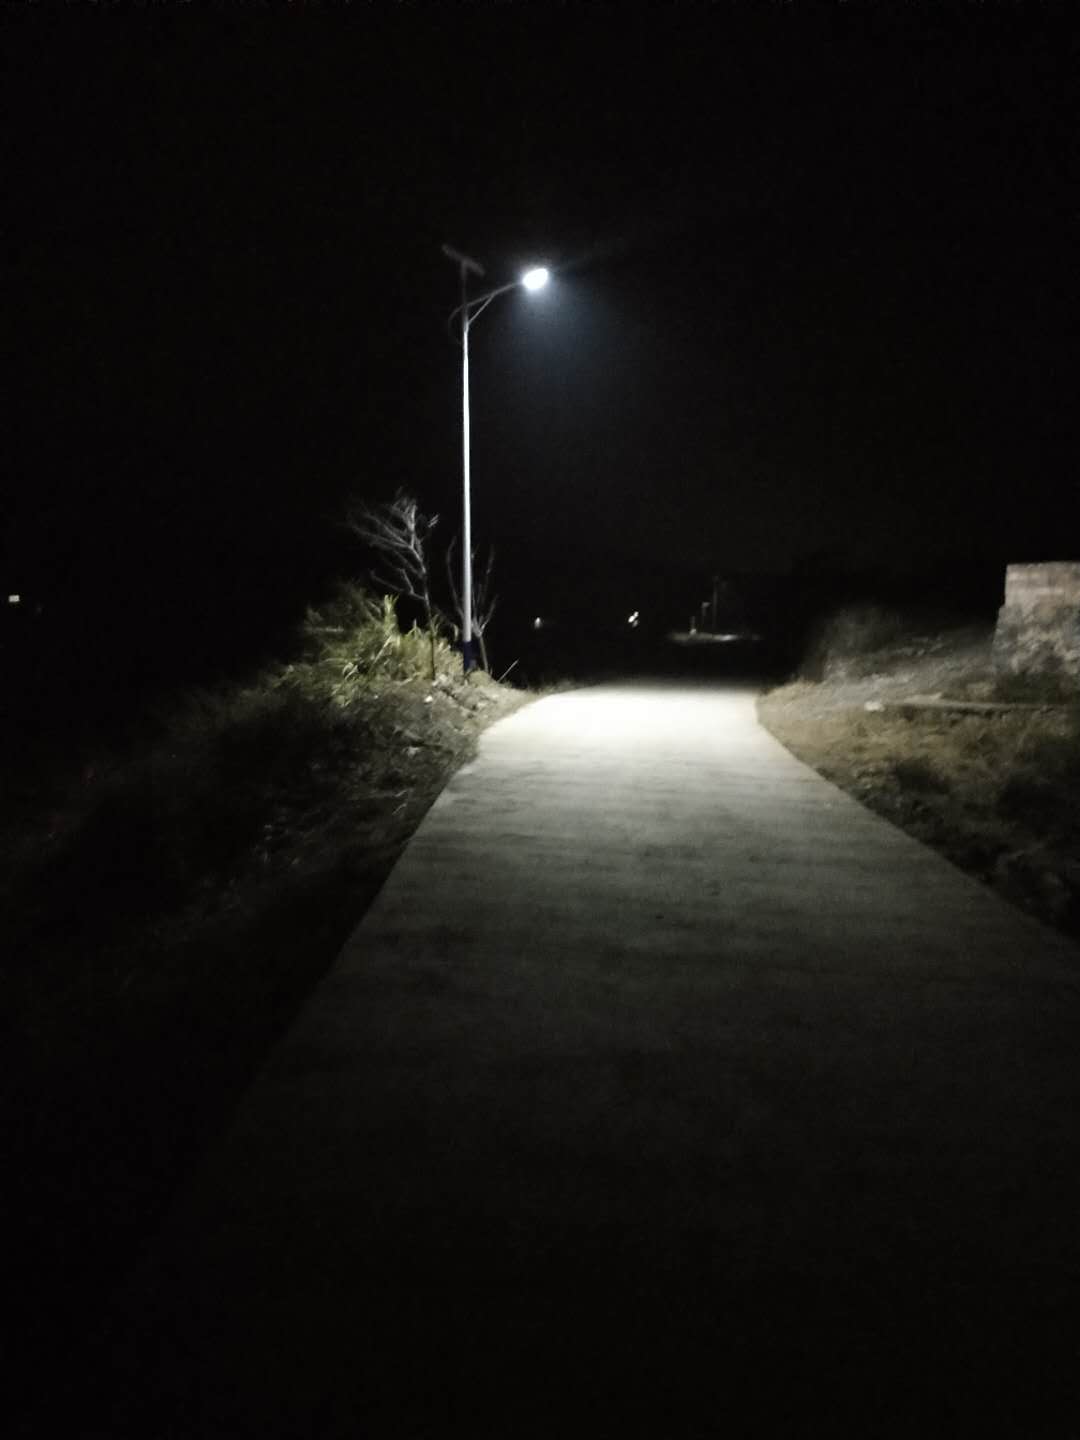 近来村里两件事情值得点赞: 1这两天,村里公路安装了太阳能路灯,晚上